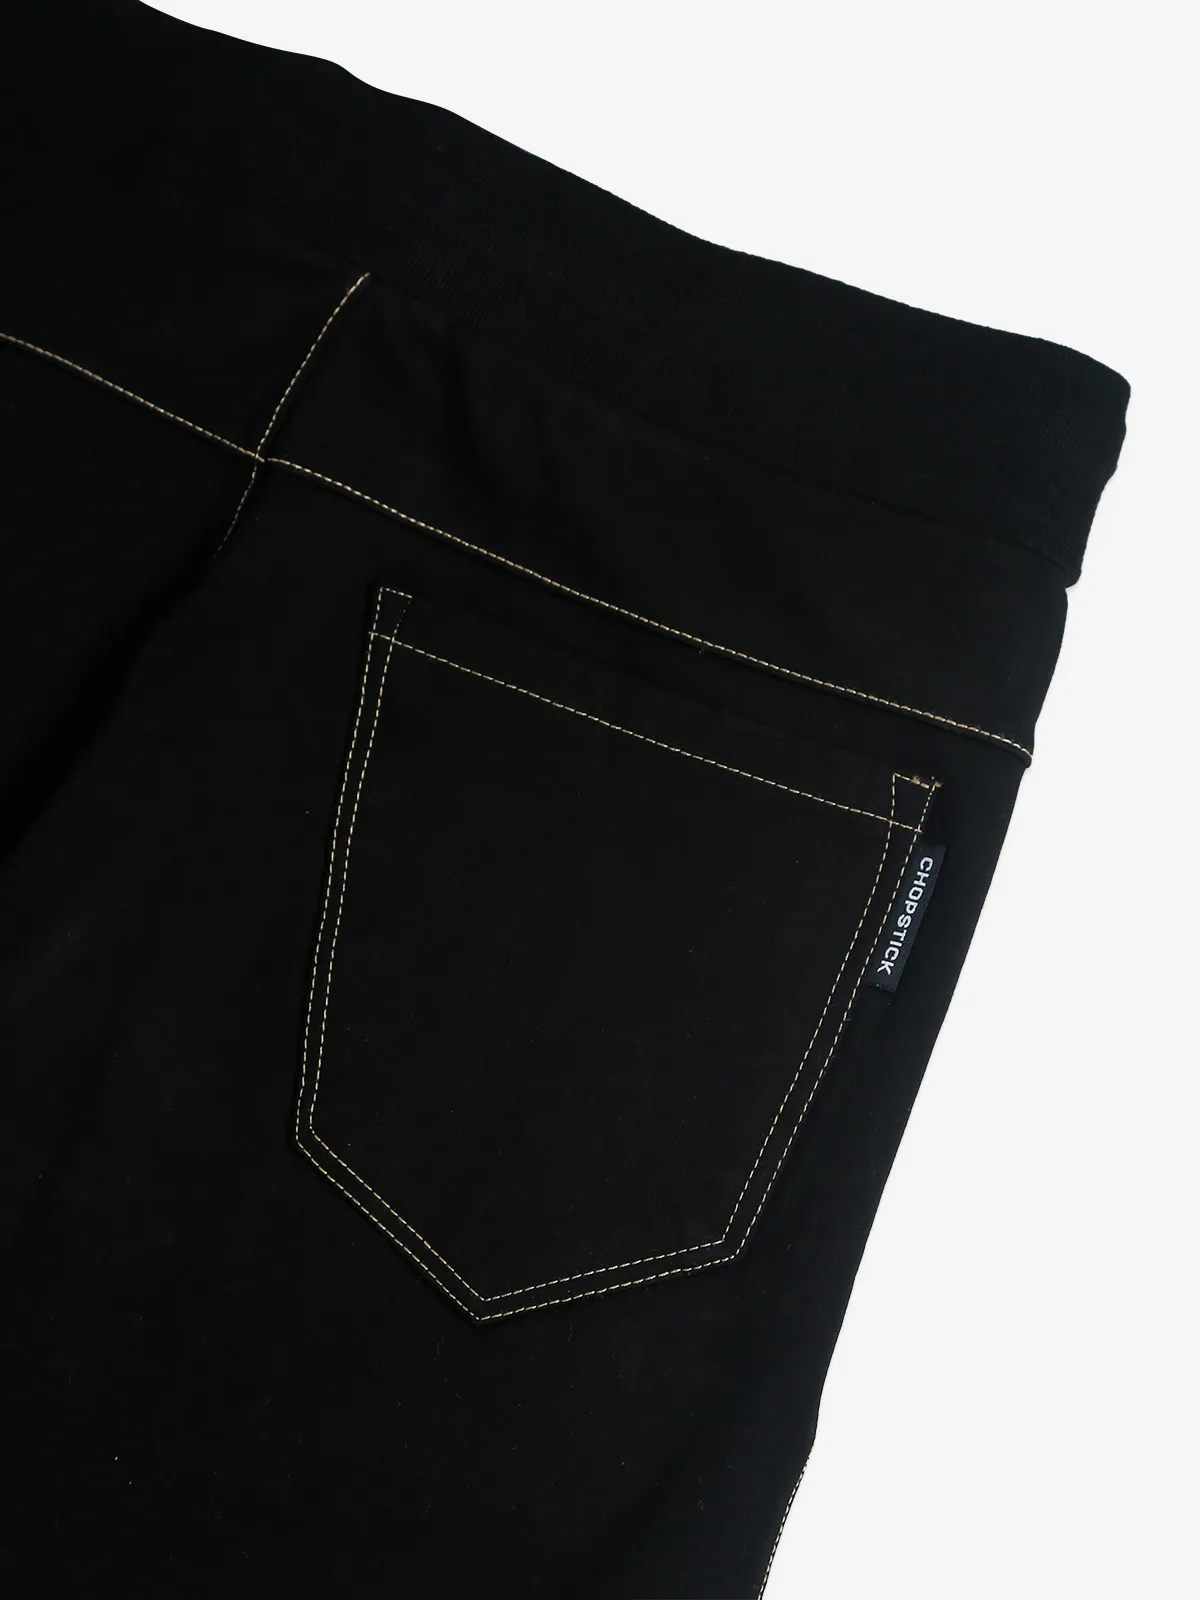 Chopstick solid black cotton track pant